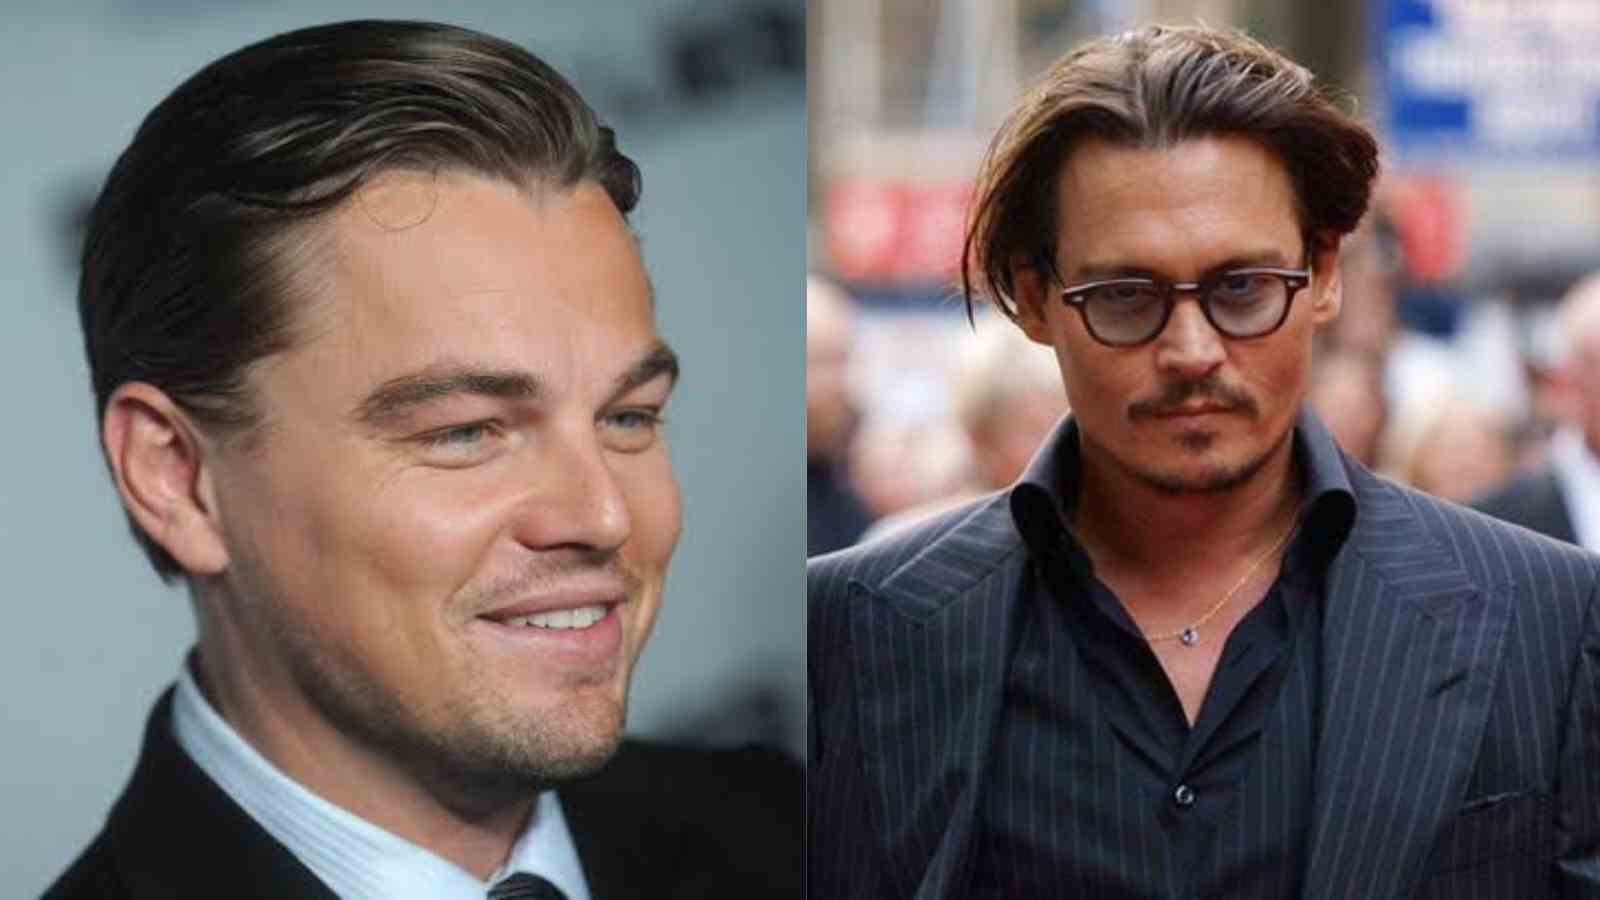 Are Leonardo DiCaprio And Johnny Depp Friends?